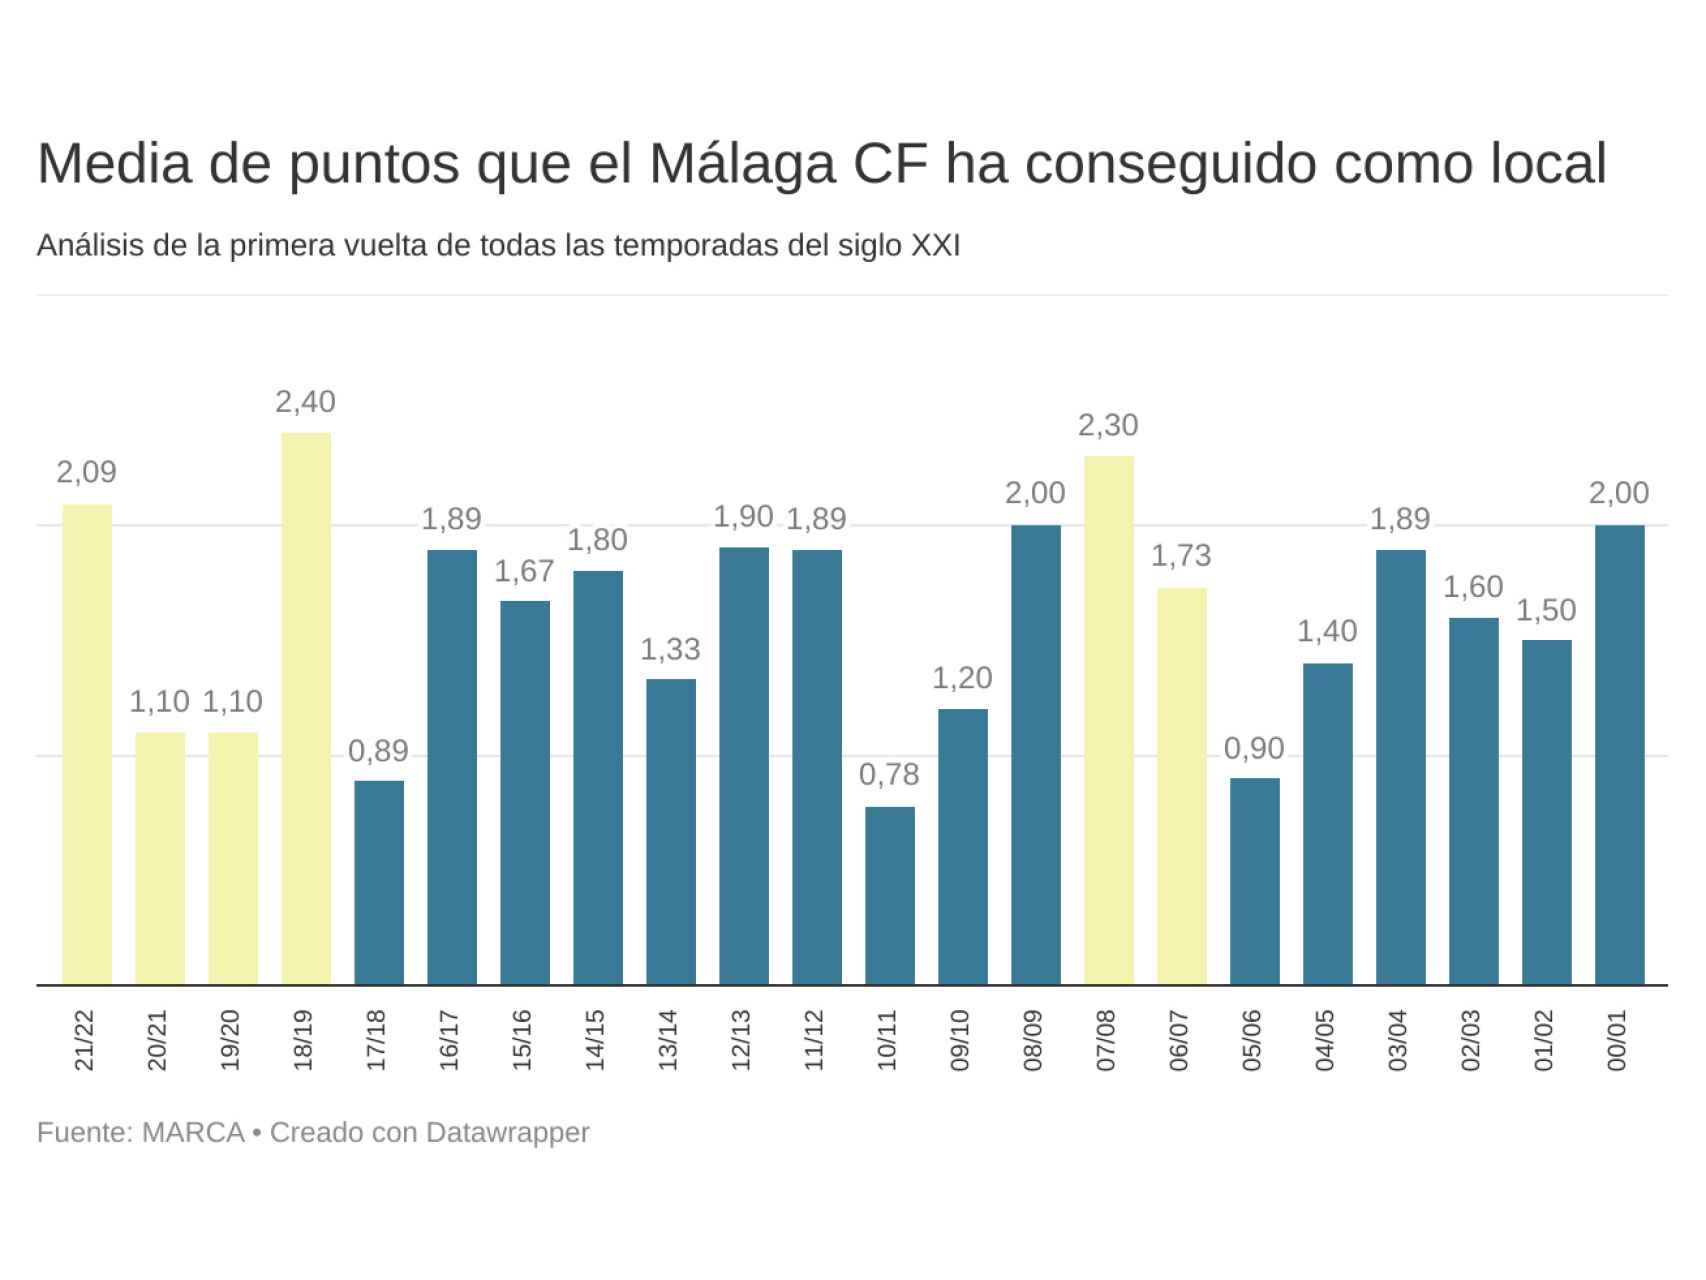 Análisis de los puntos de media que ha obtenido el Málaga CF como local en la primera vuelta.